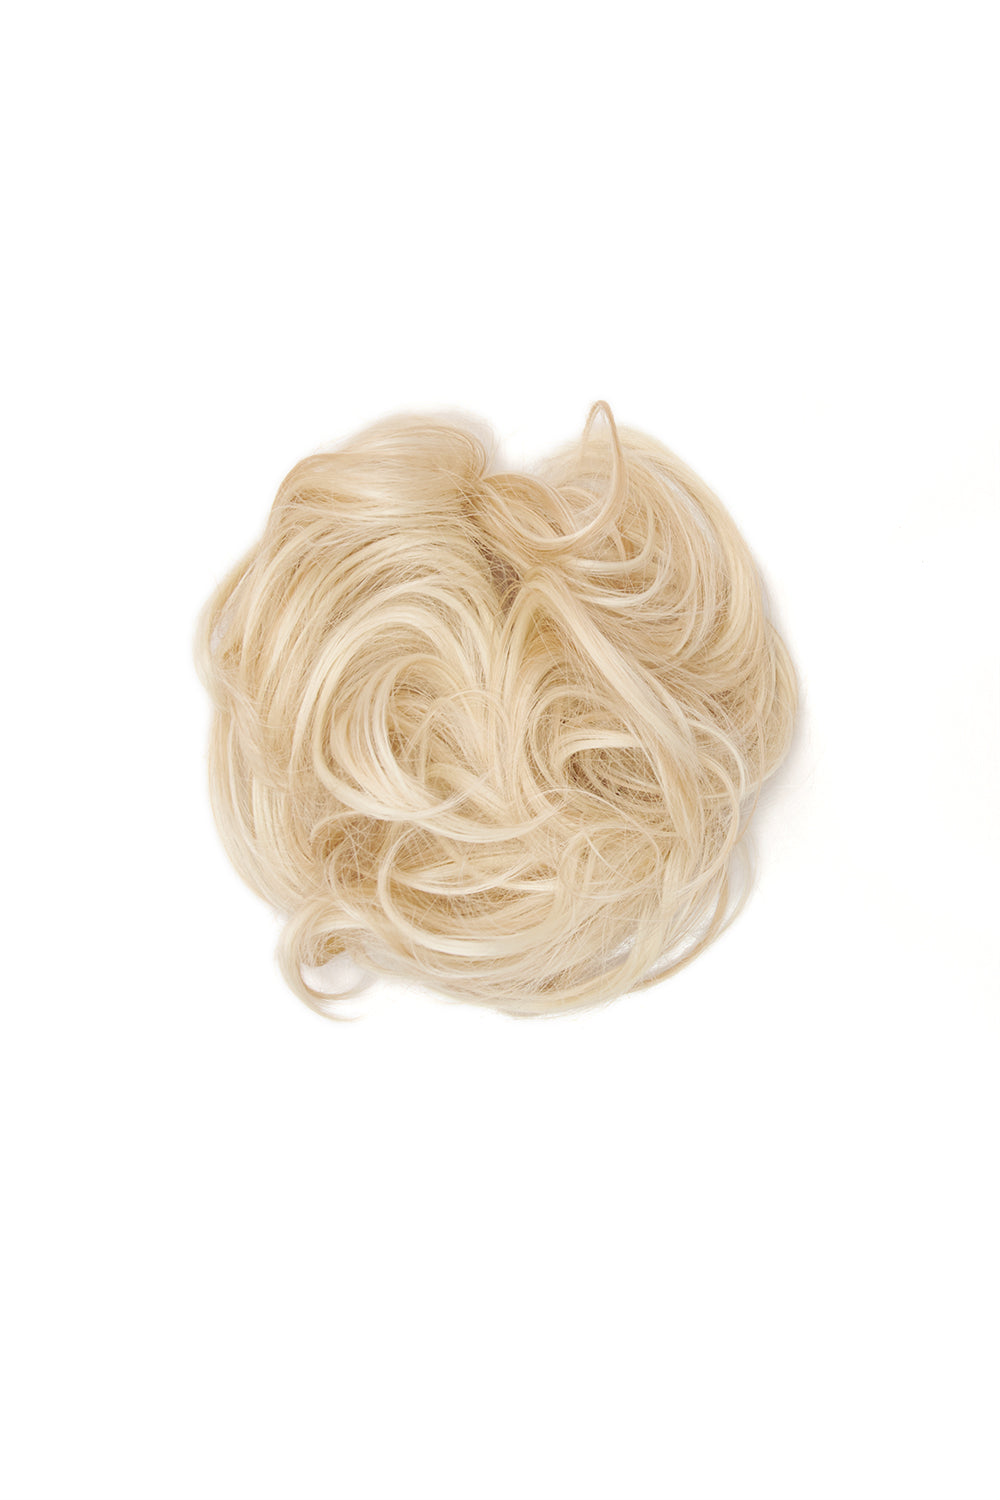 Premium Messy Bun Hair Up Scrunchie - LullaBellz  - Champagne Blonde